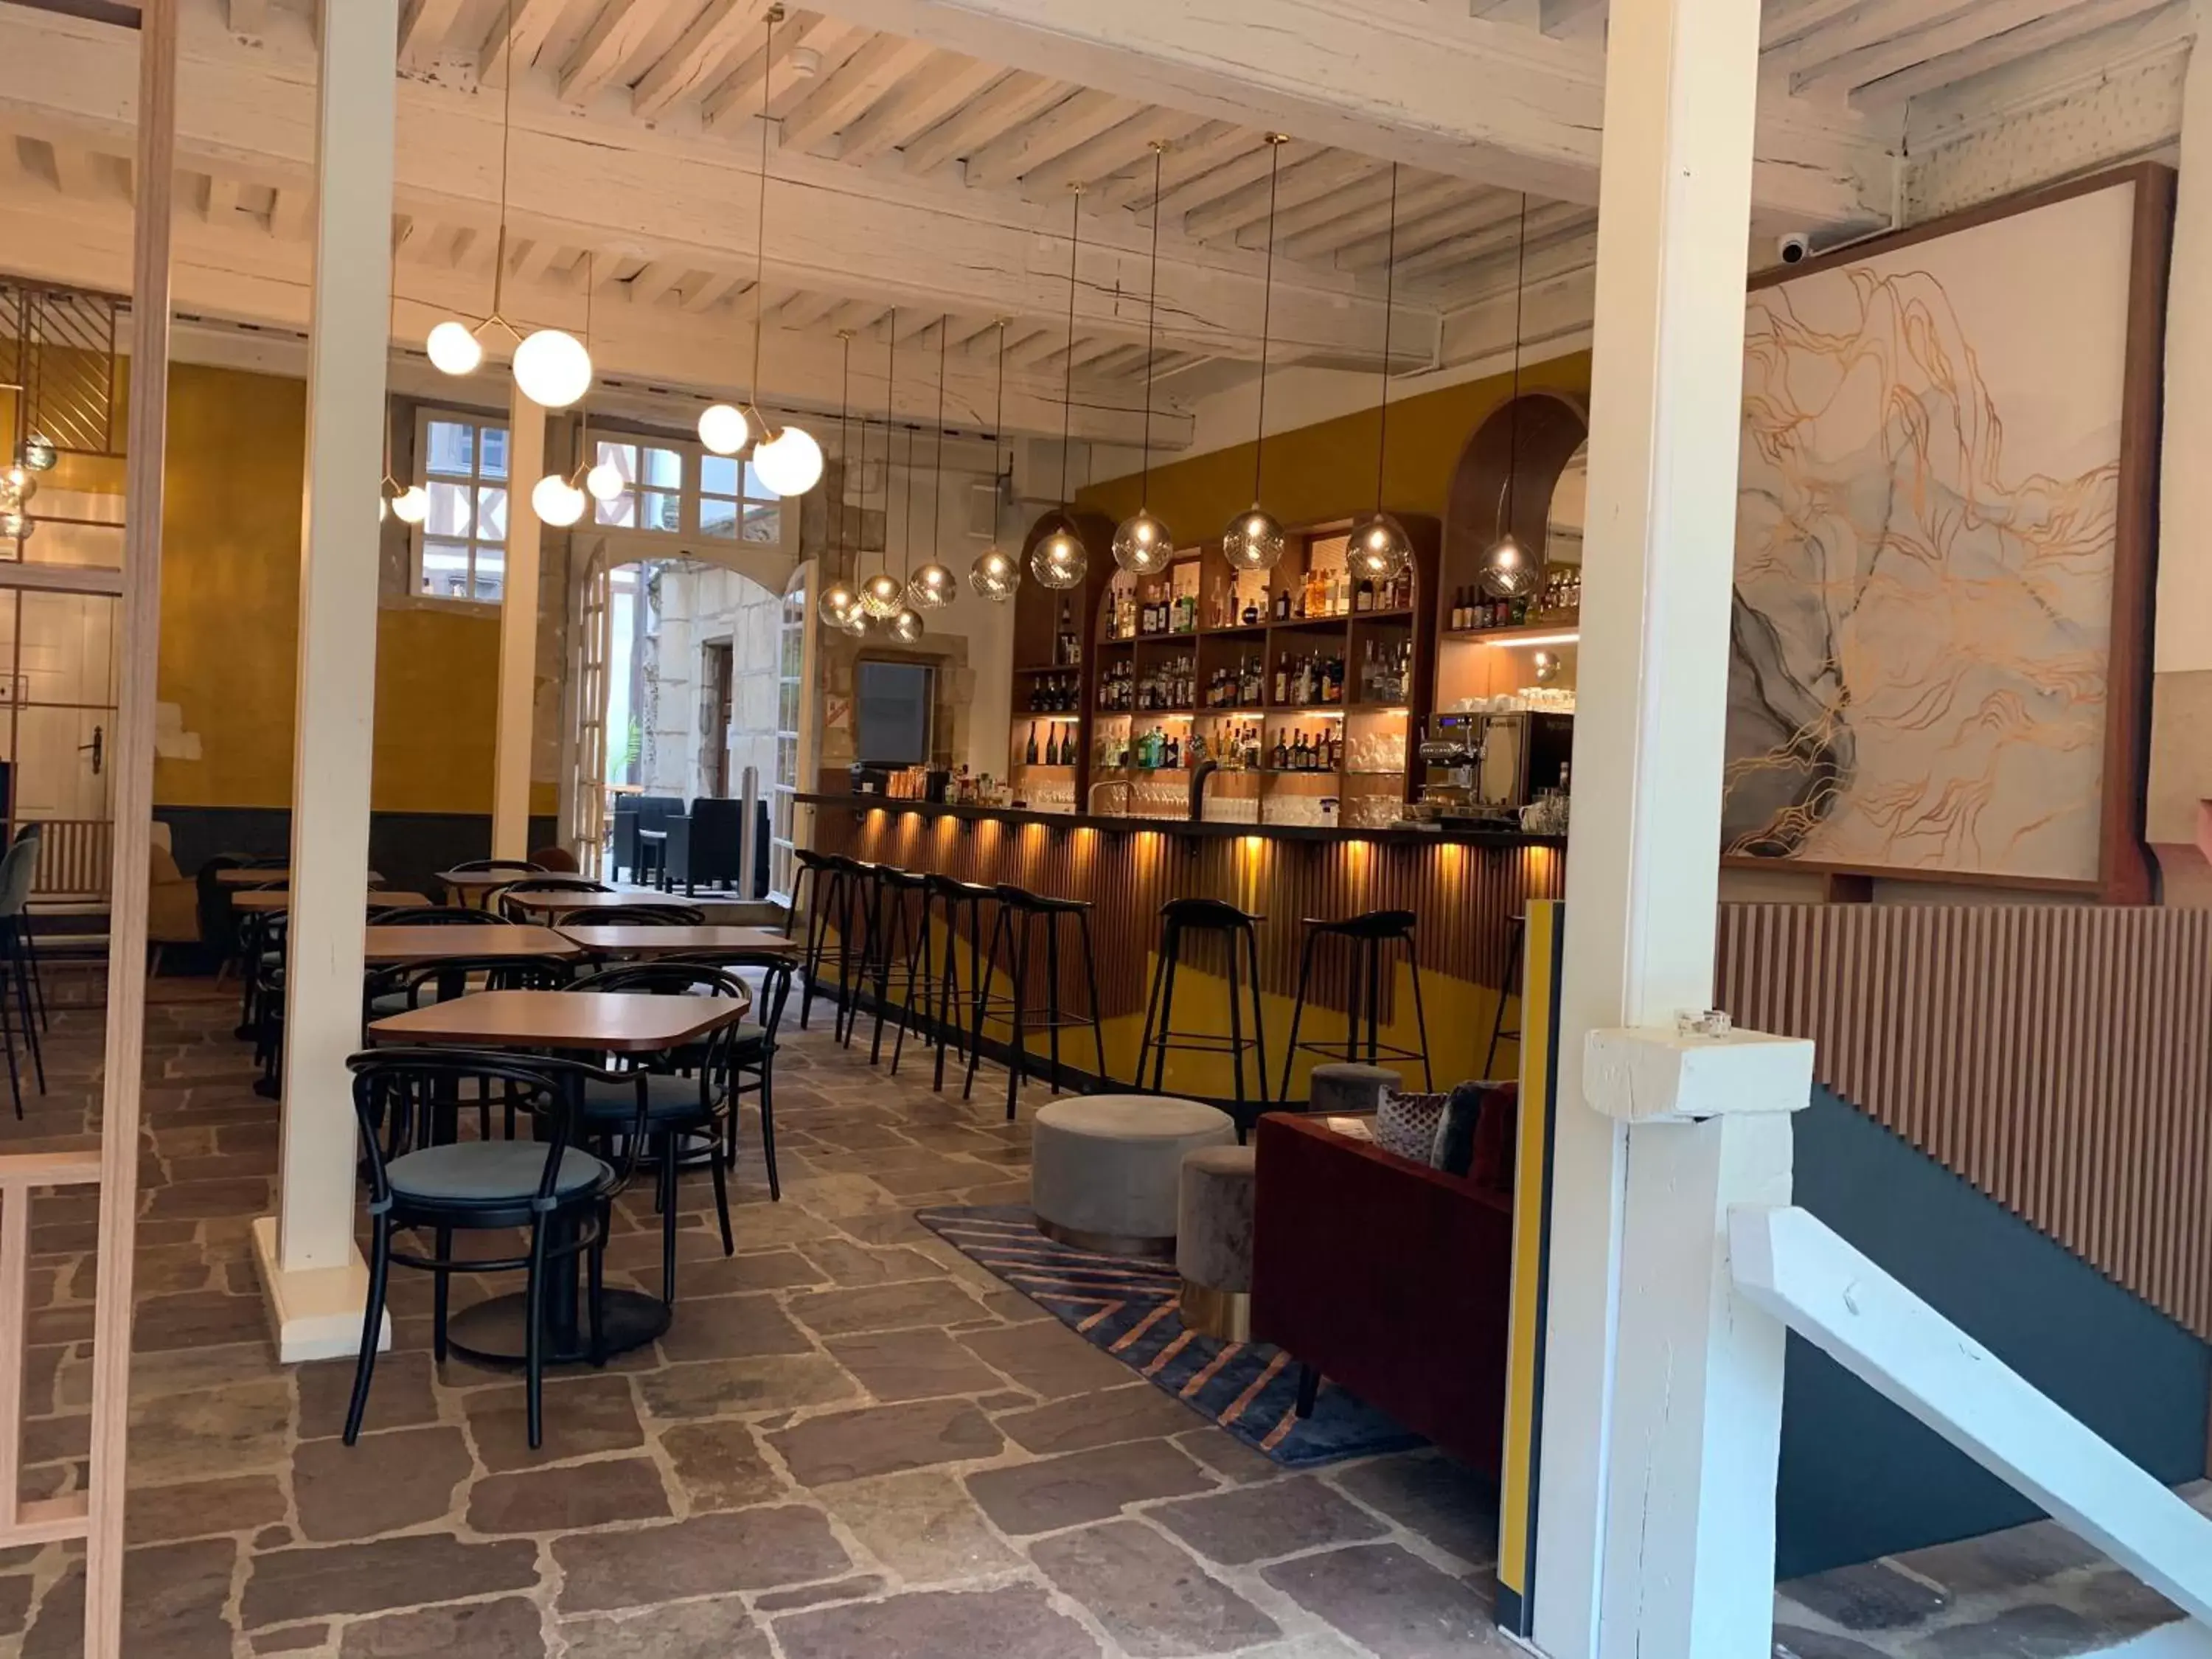 Restaurant/places to eat in Maison Philippe Le Bon, Les Collectionneurs